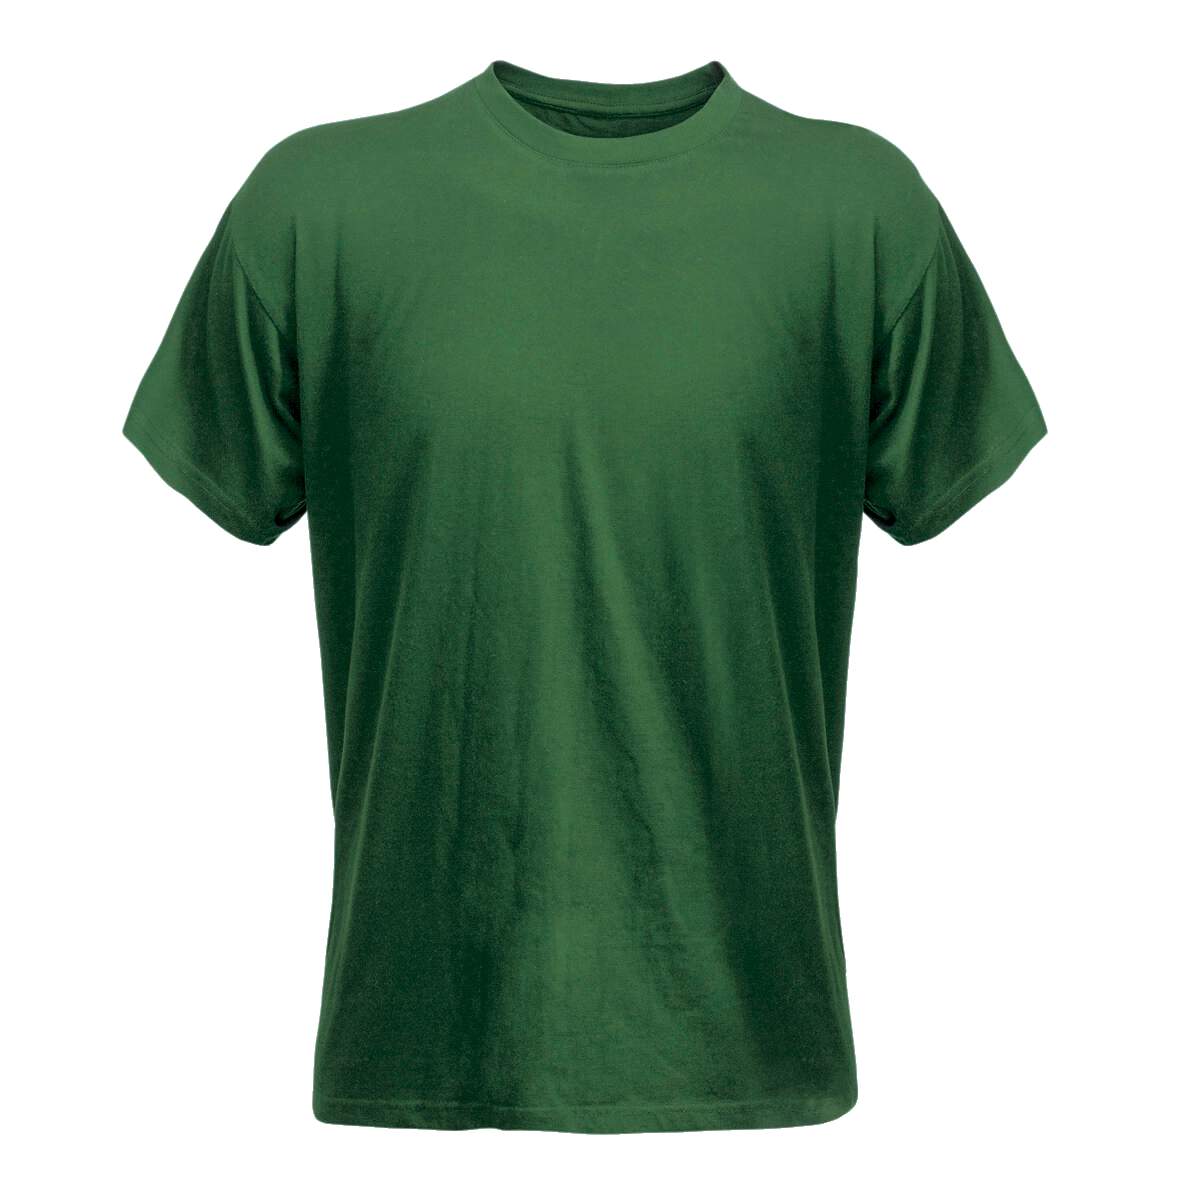 1138339 - T-Shirt grün Gr.XL Code 1912